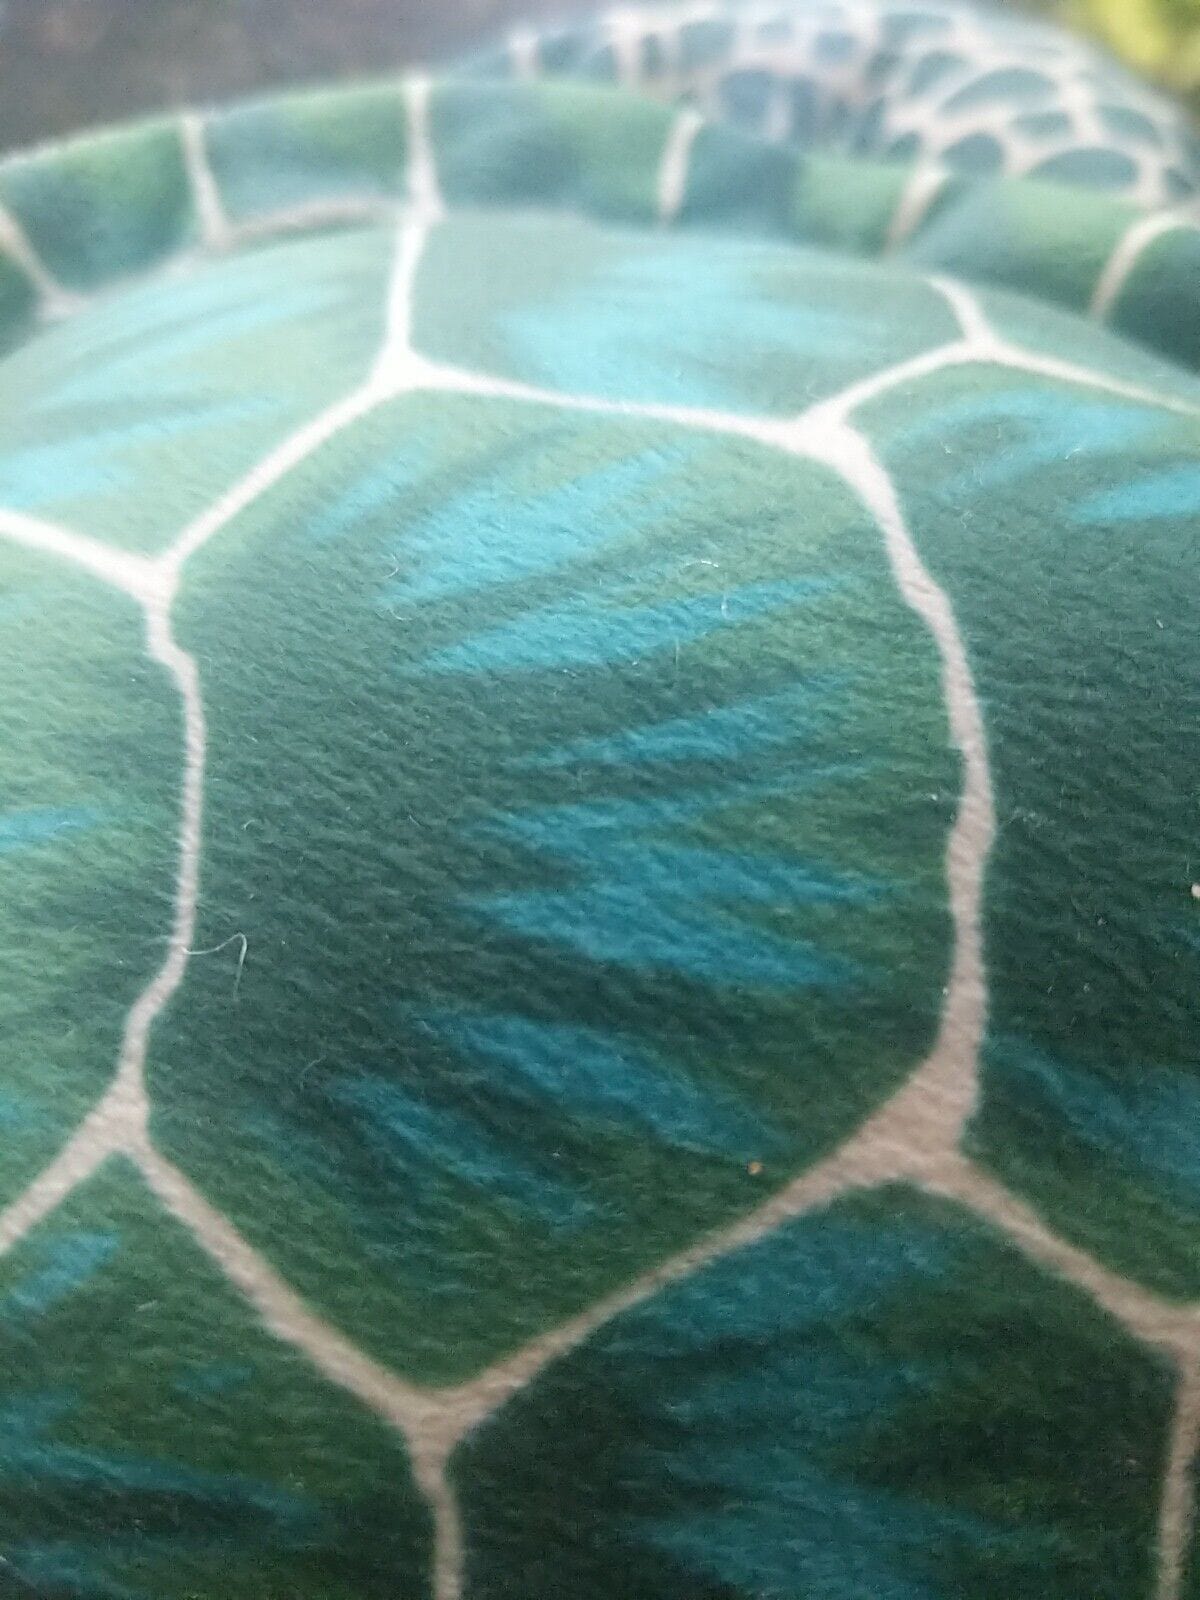 Mini Green Sea turtle By wild Republic